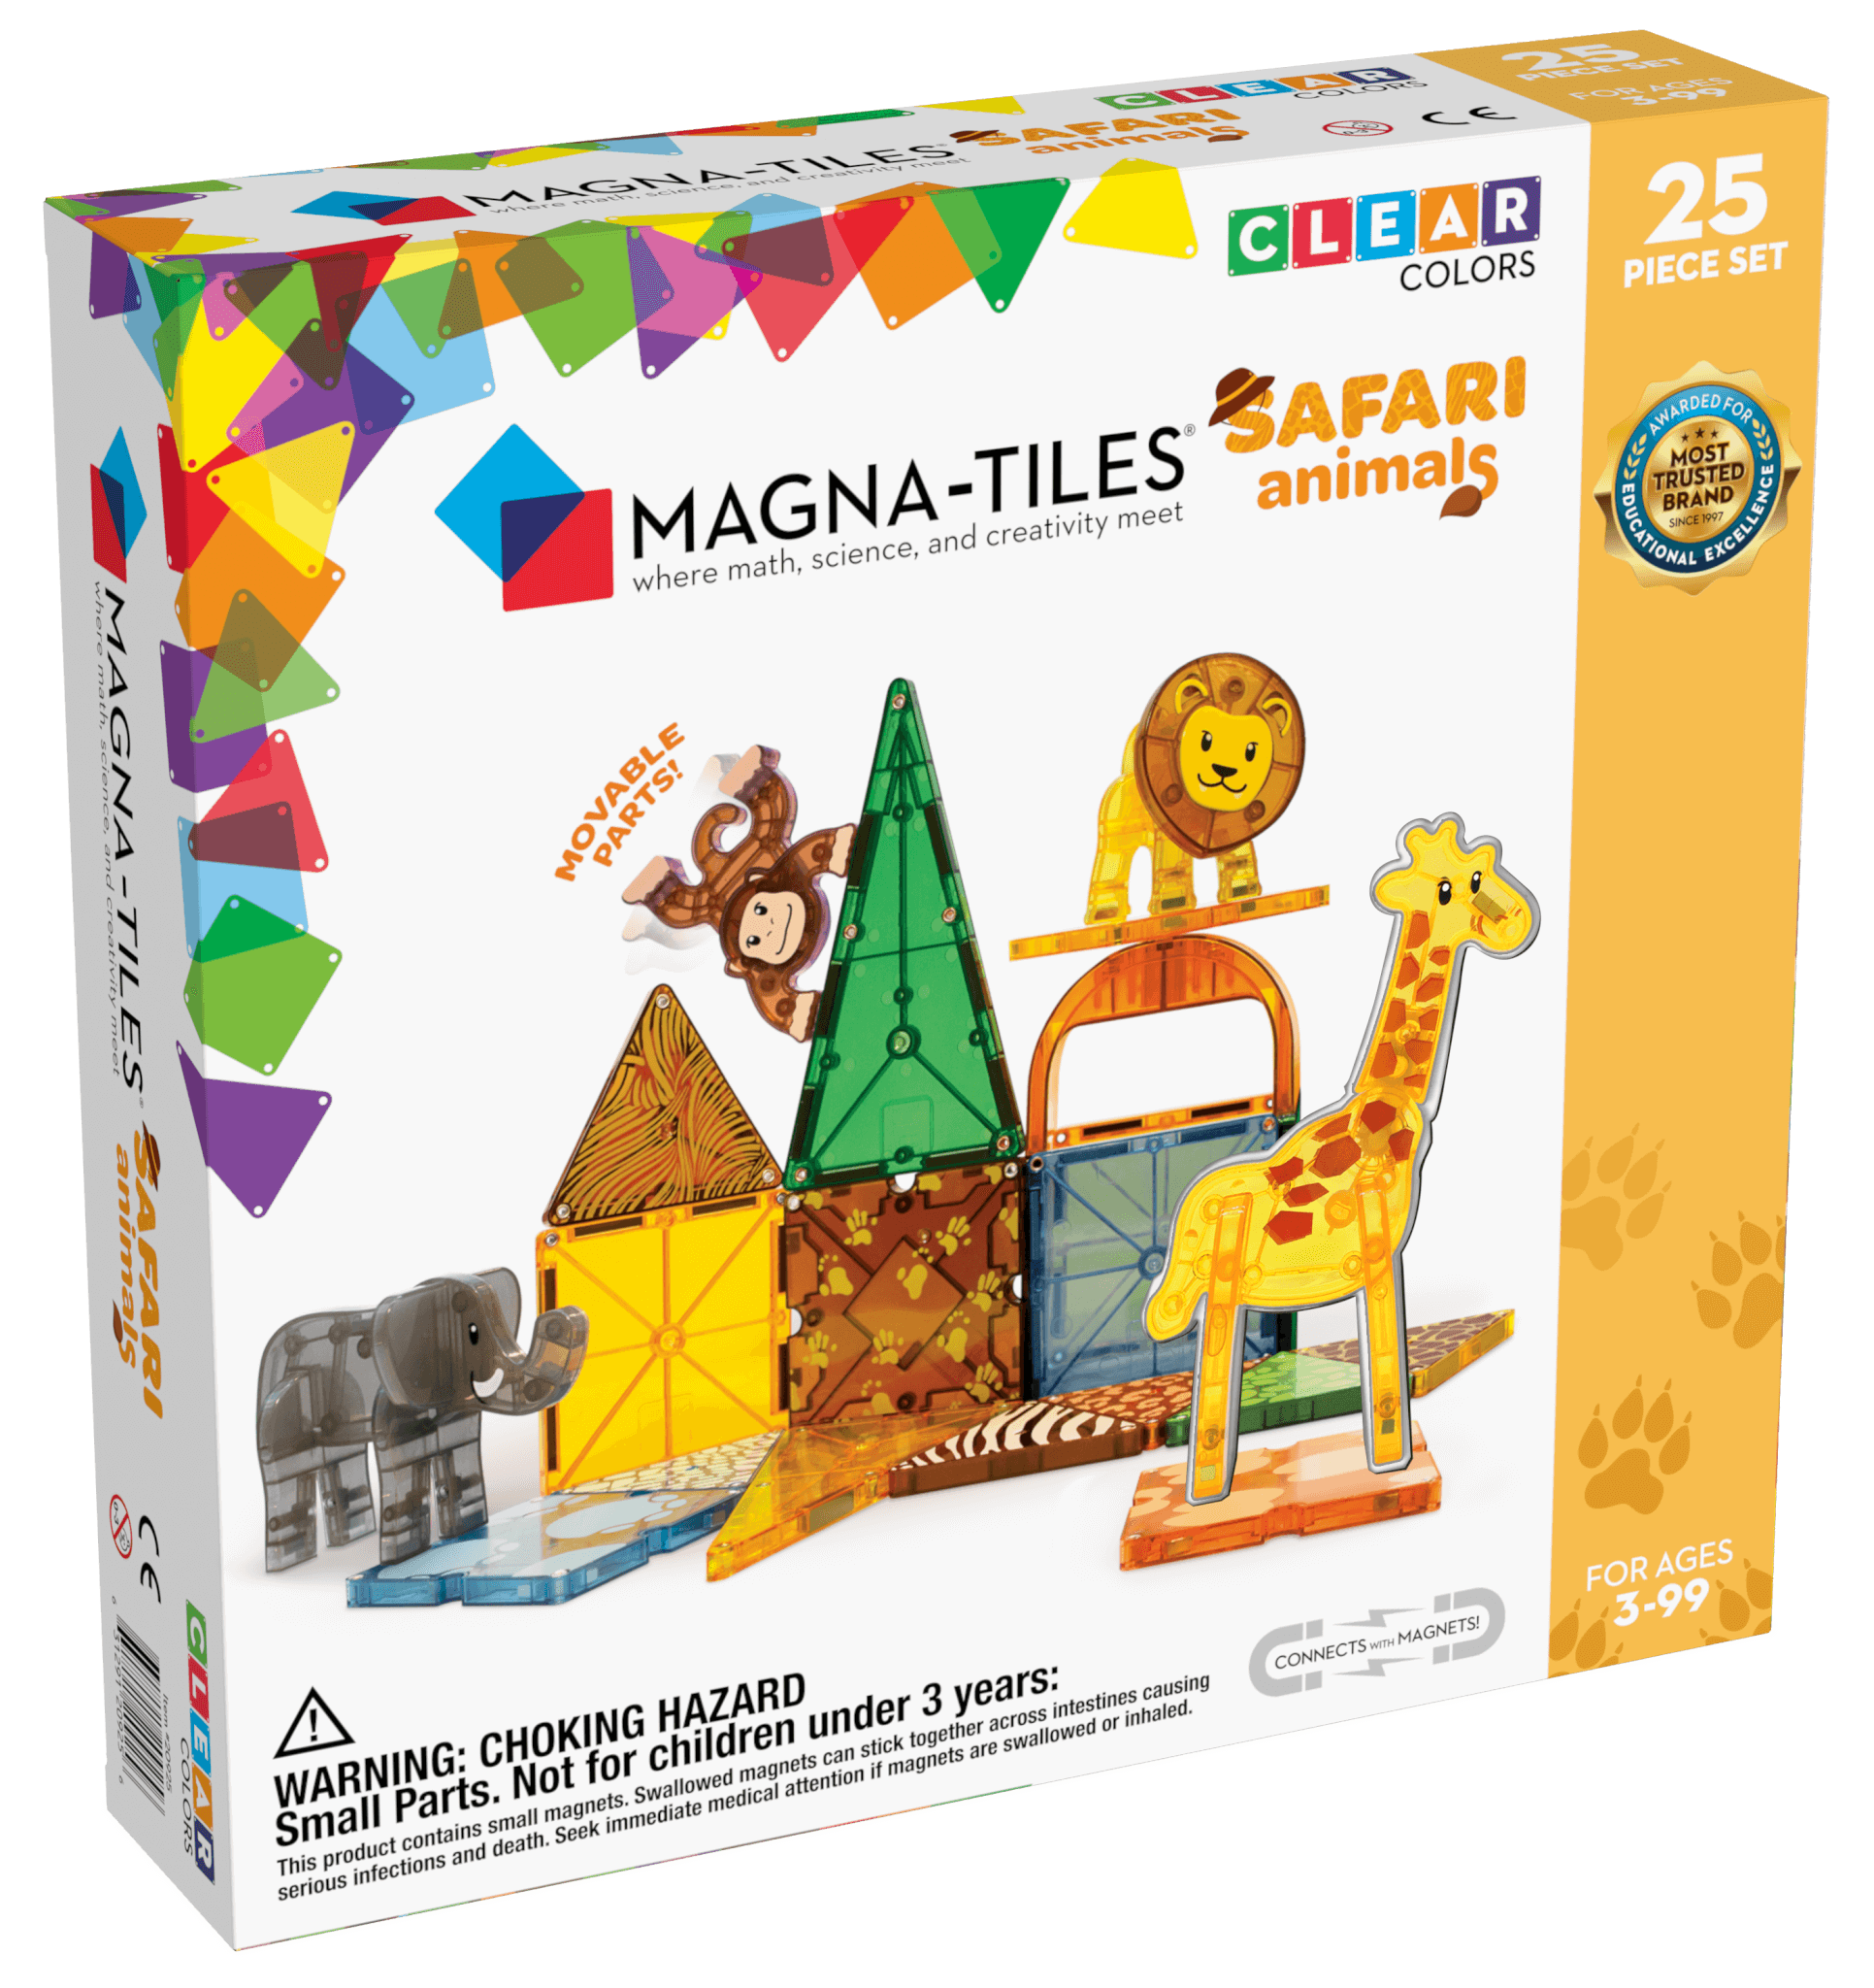 Magna-tiles Safari Animals